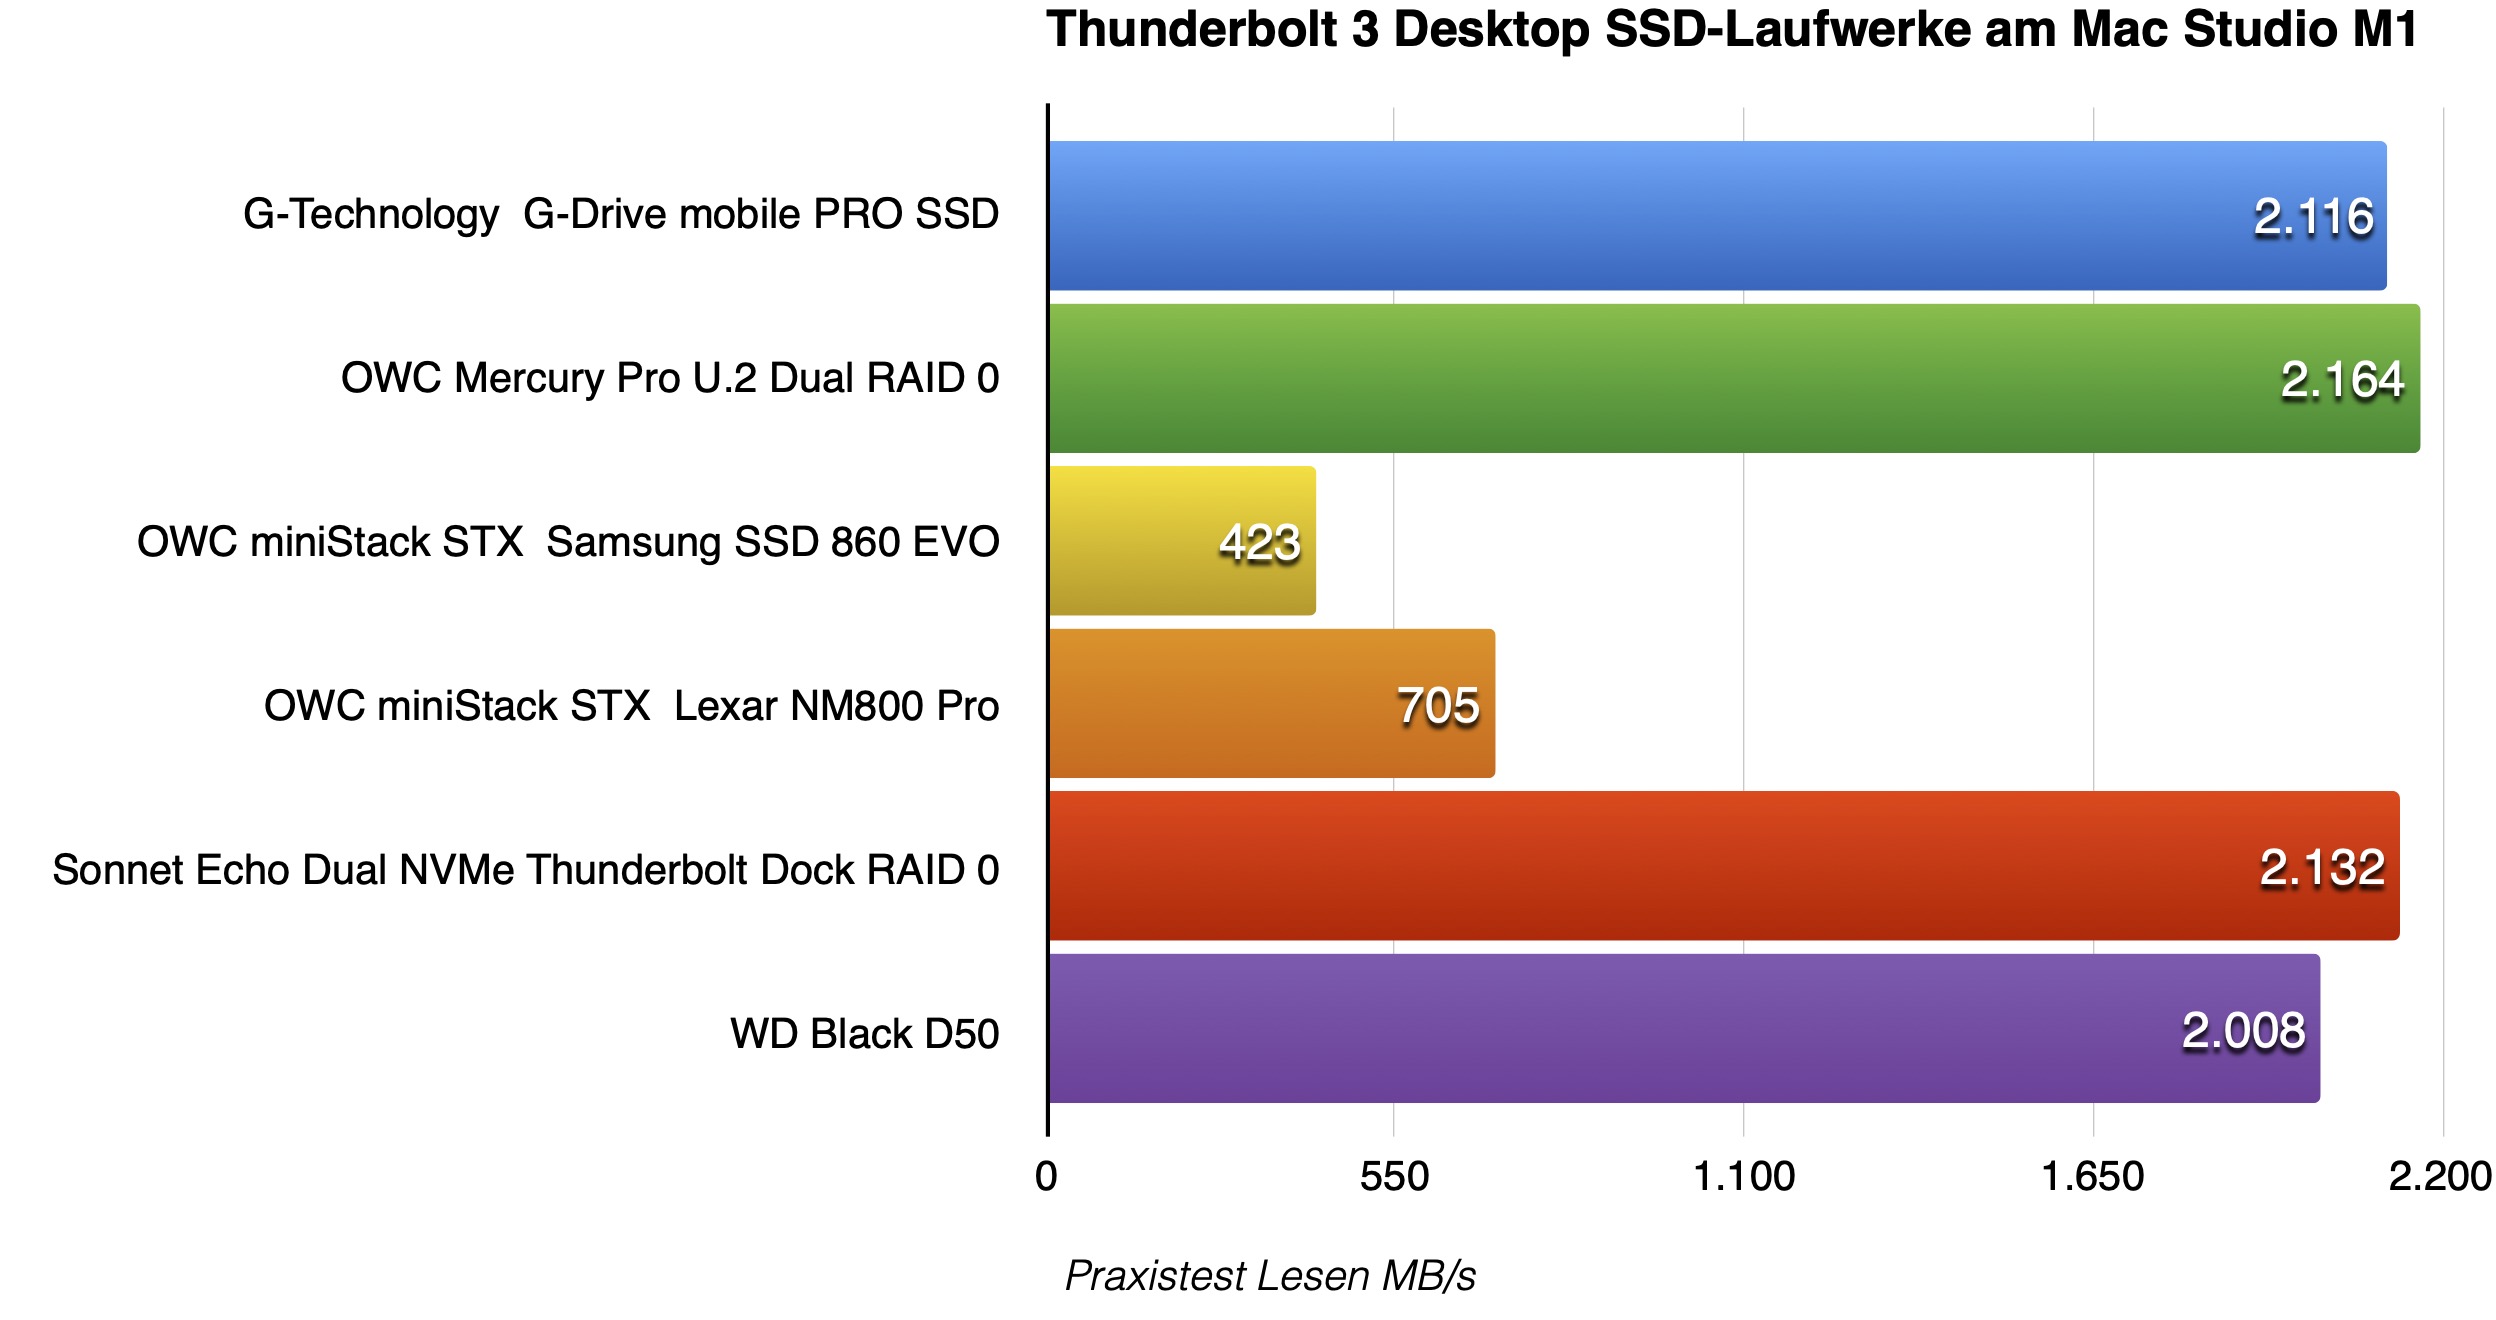 Desktop SSD Praxis Lesen